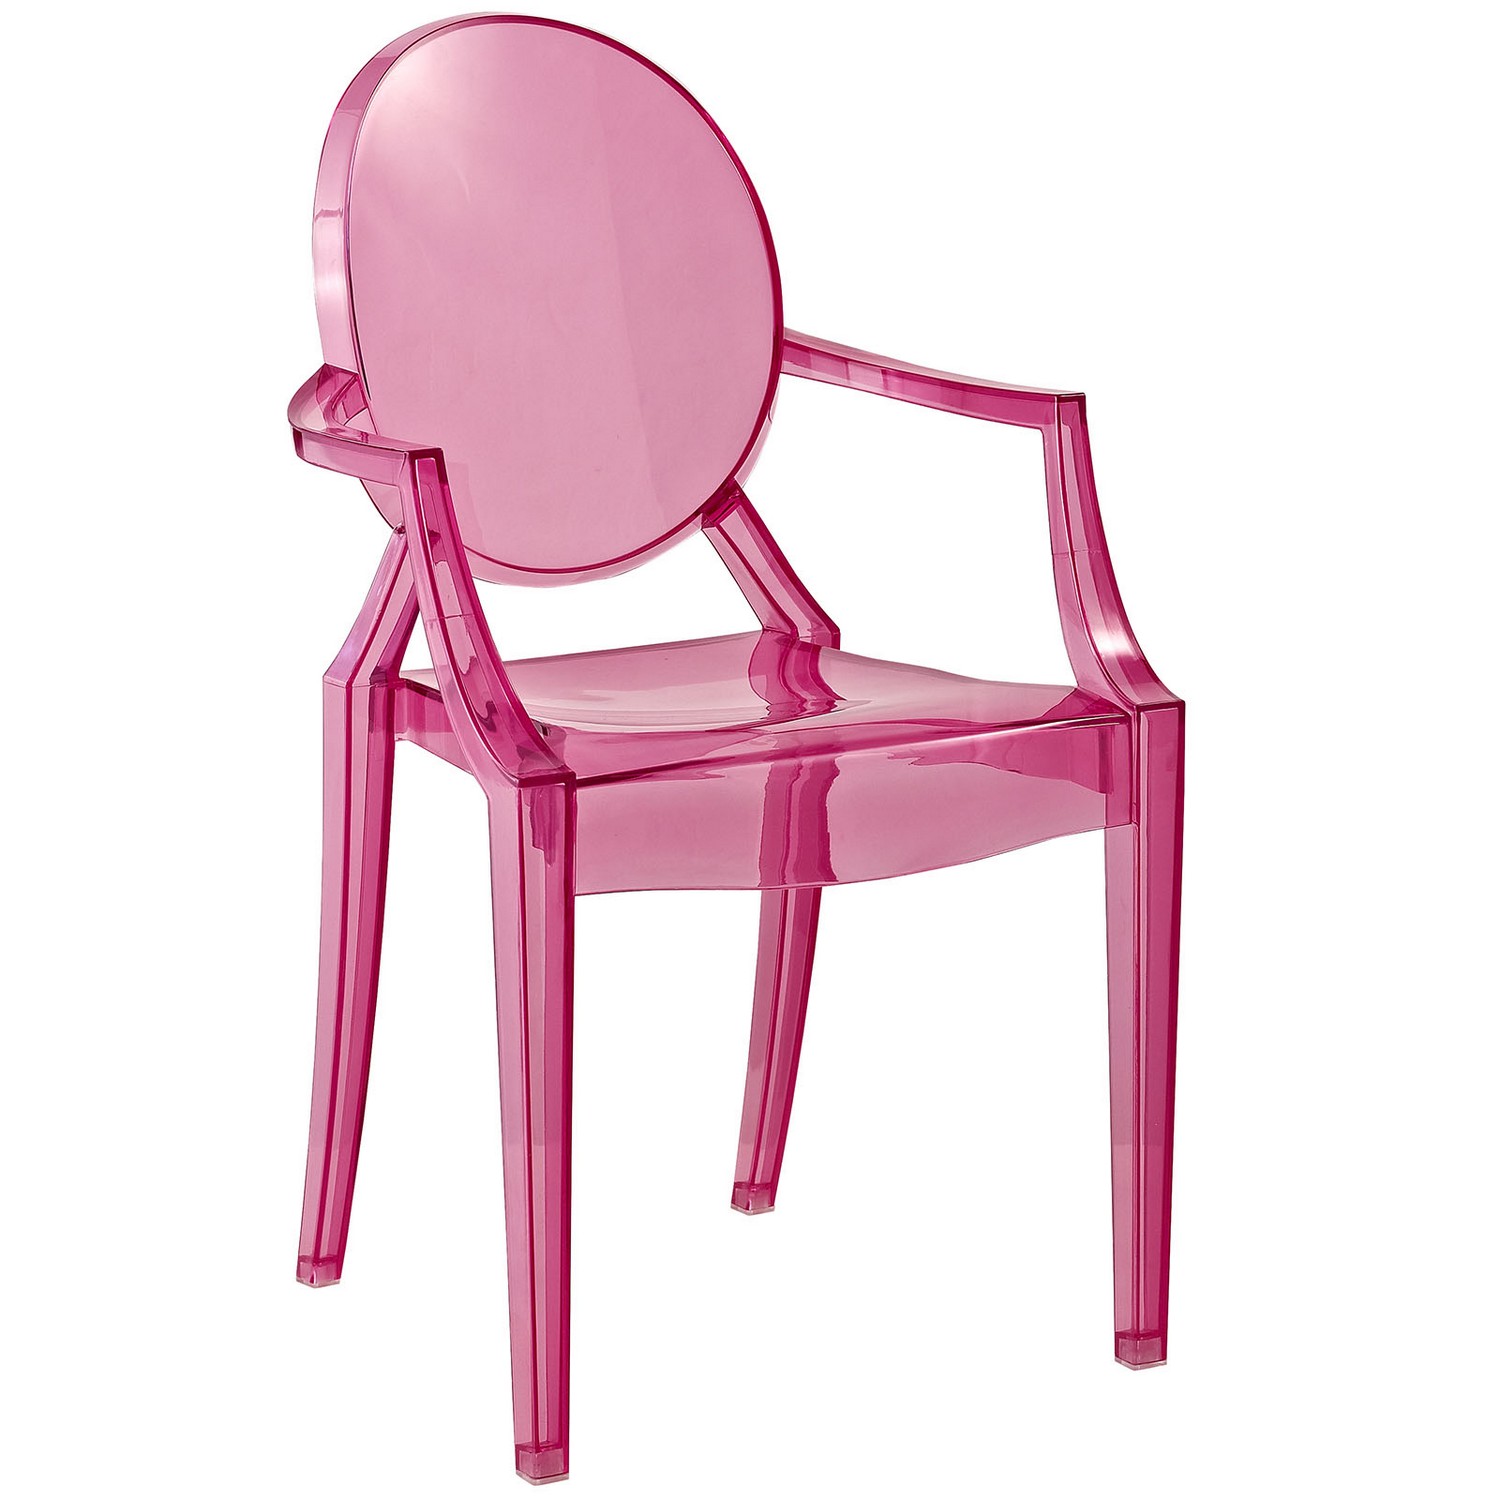 Modway Casper Kids Chair - Pink